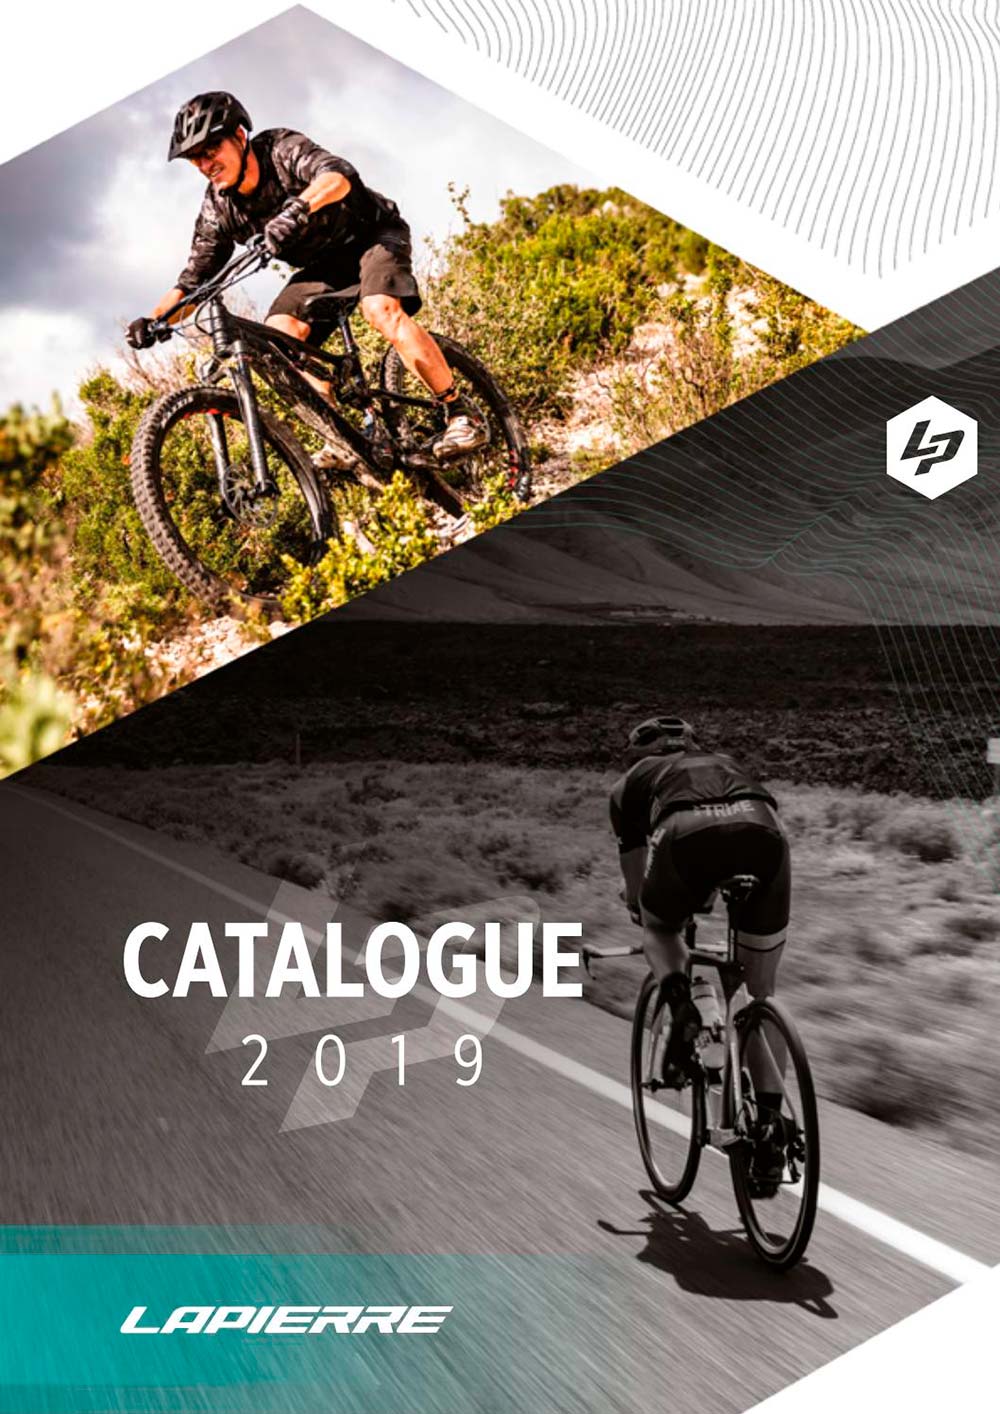 Catálogo de Lapierre 2019. Toda la gama de bicicletas Lapierre para la temporada 2019